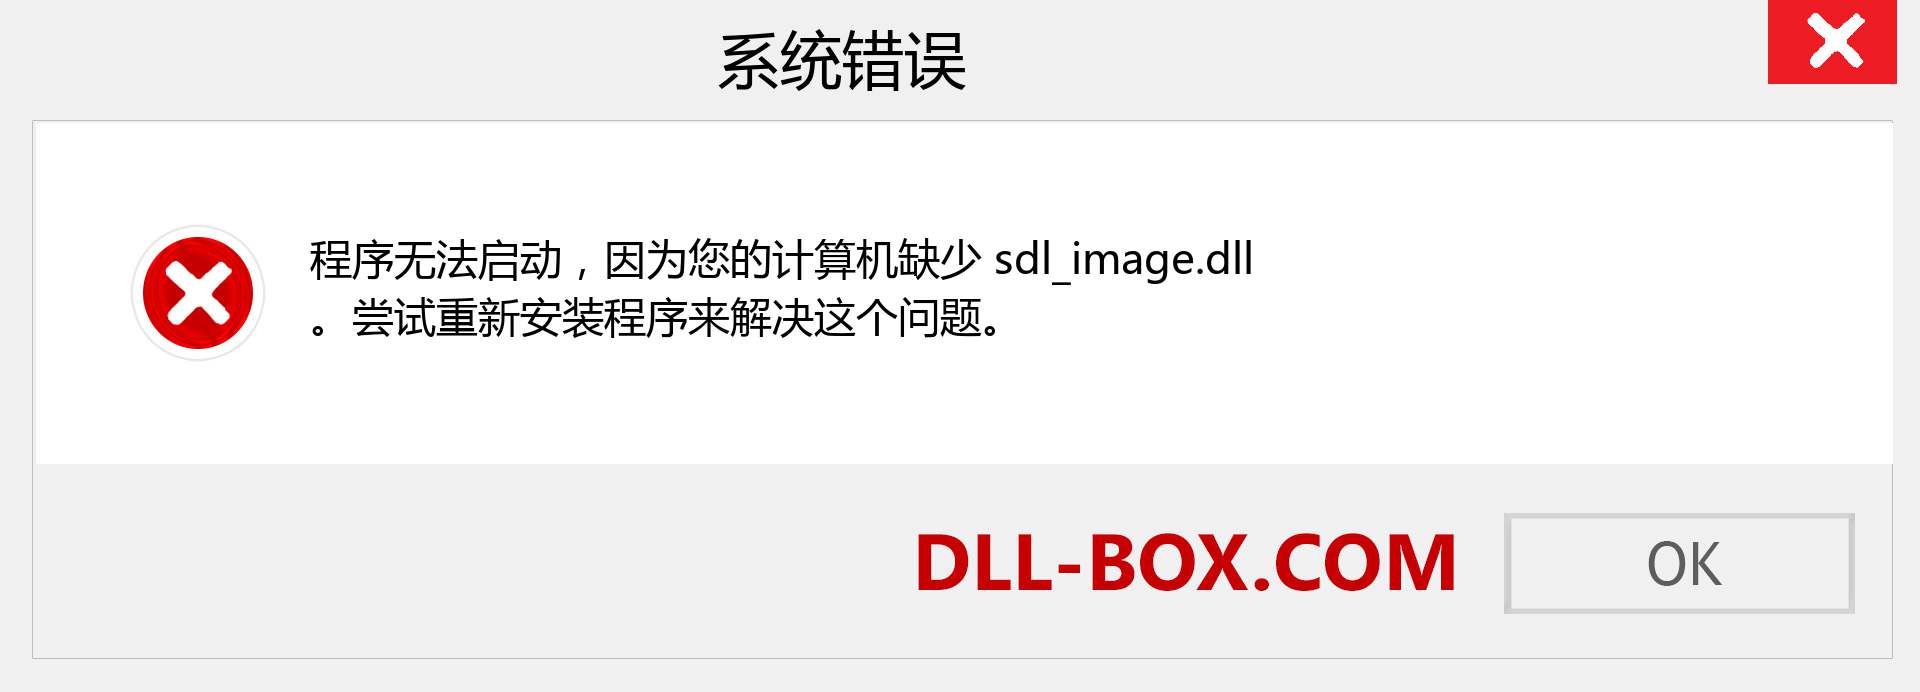 sdl_image.dll 文件丢失？。 适用于 Windows 7、8、10 的下载 - 修复 Windows、照片、图像上的 sdl_image dll 丢失错误